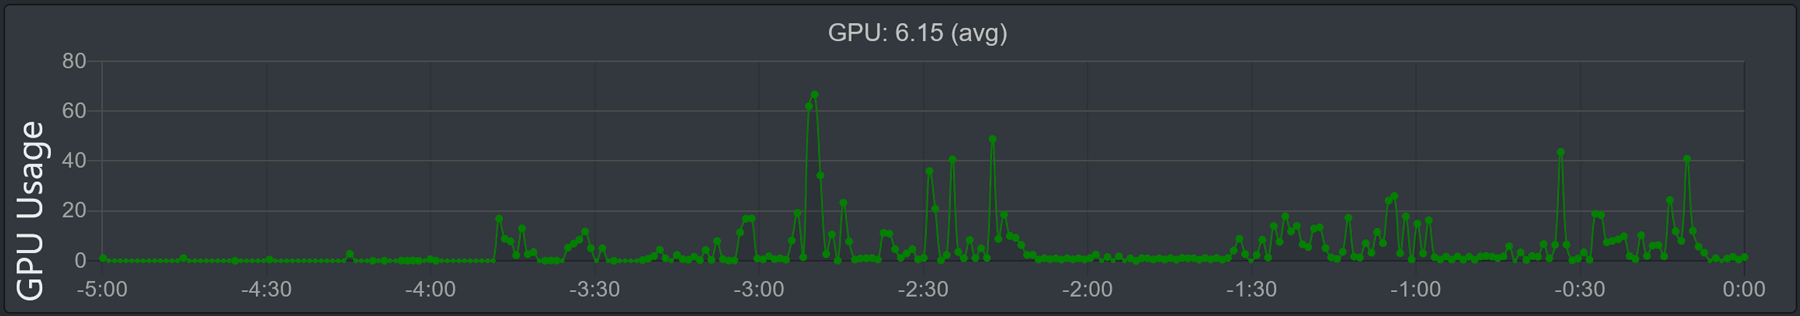 Hình ảnh của biểu đồ 'Sử dụng GPU'